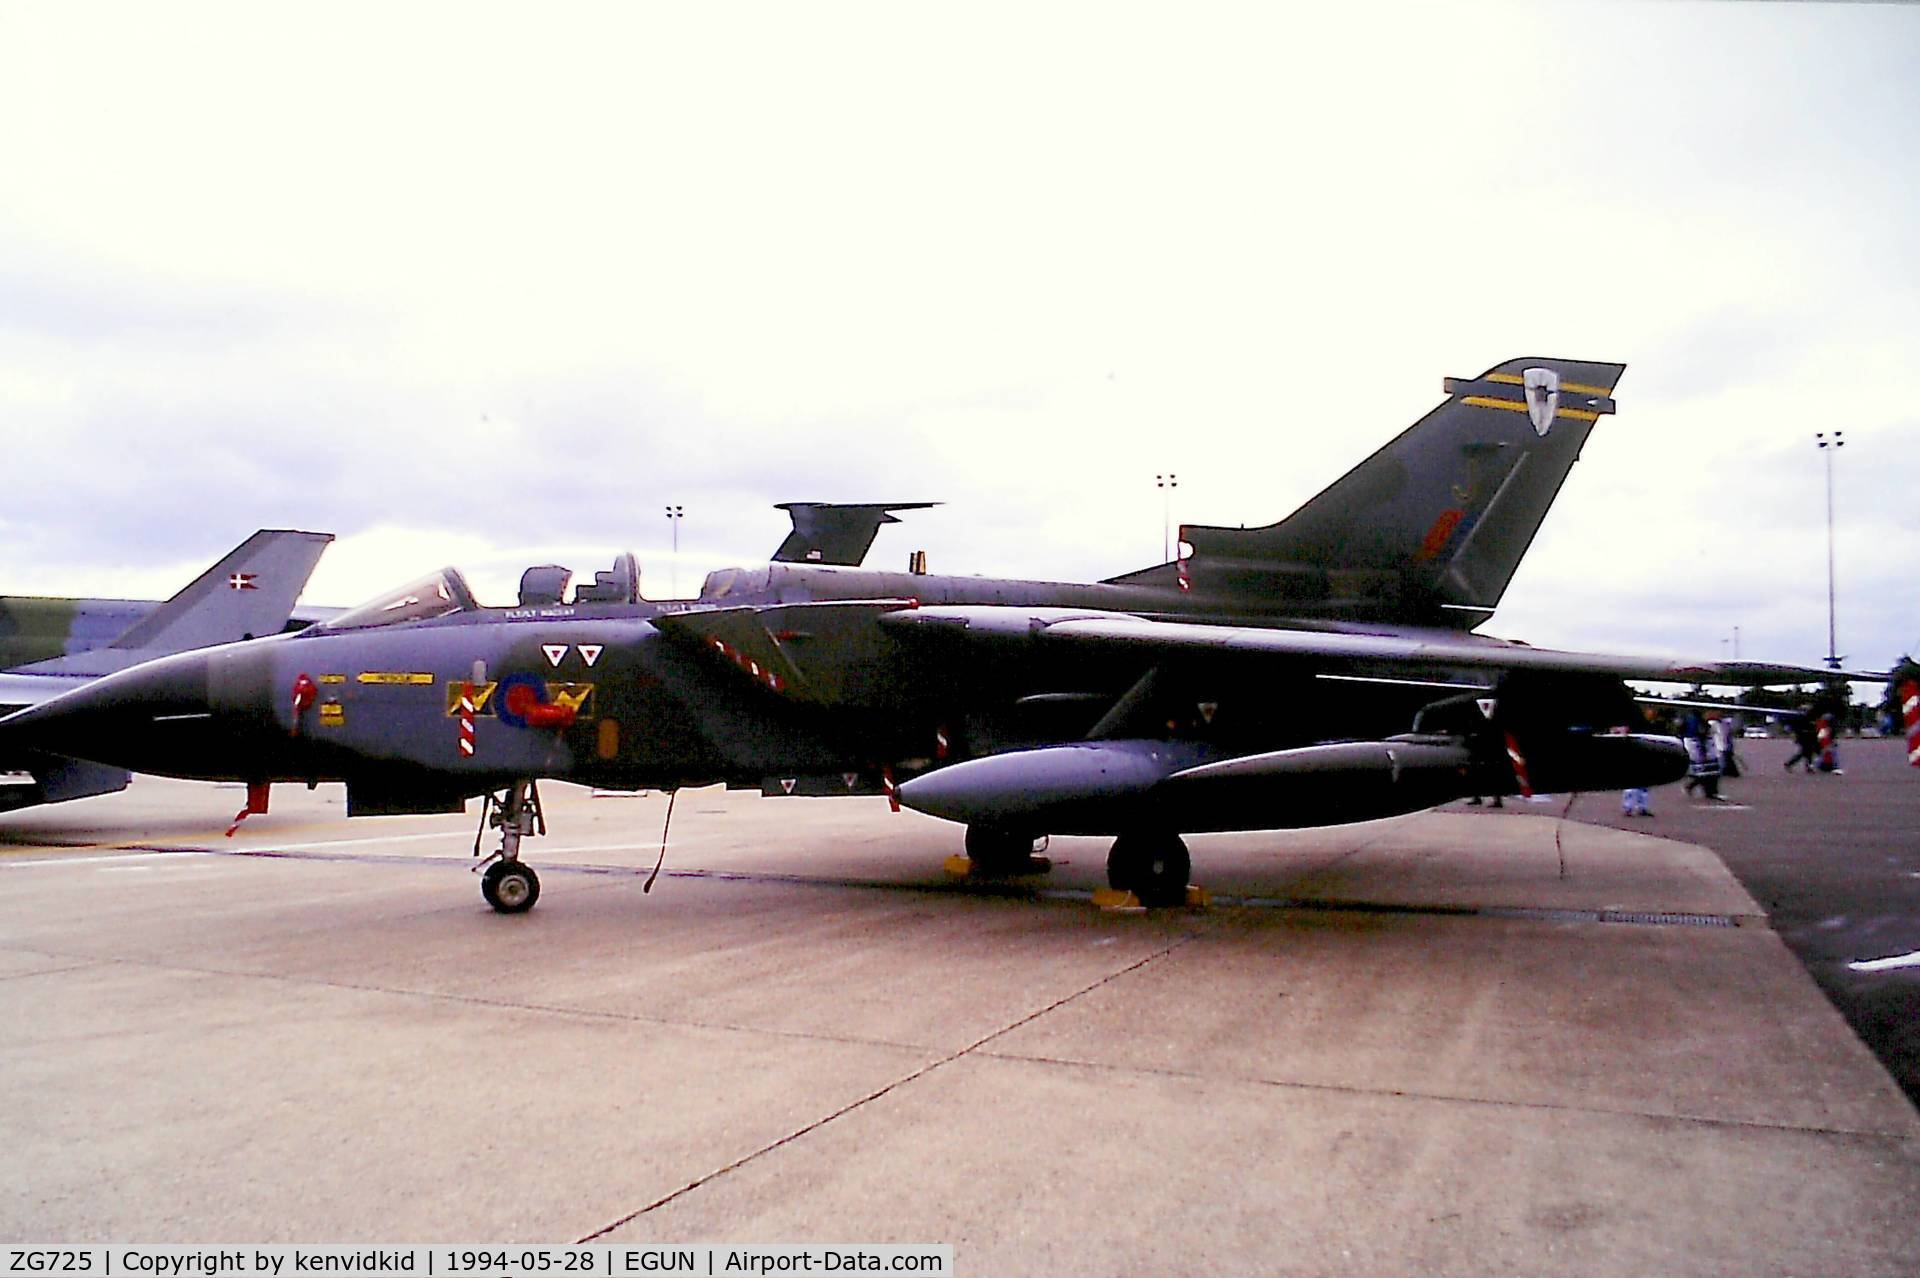 ZG725, 1990 Panavia Tornado GR.1A C/N 828/BS182/3399, At Air Fete 1994.